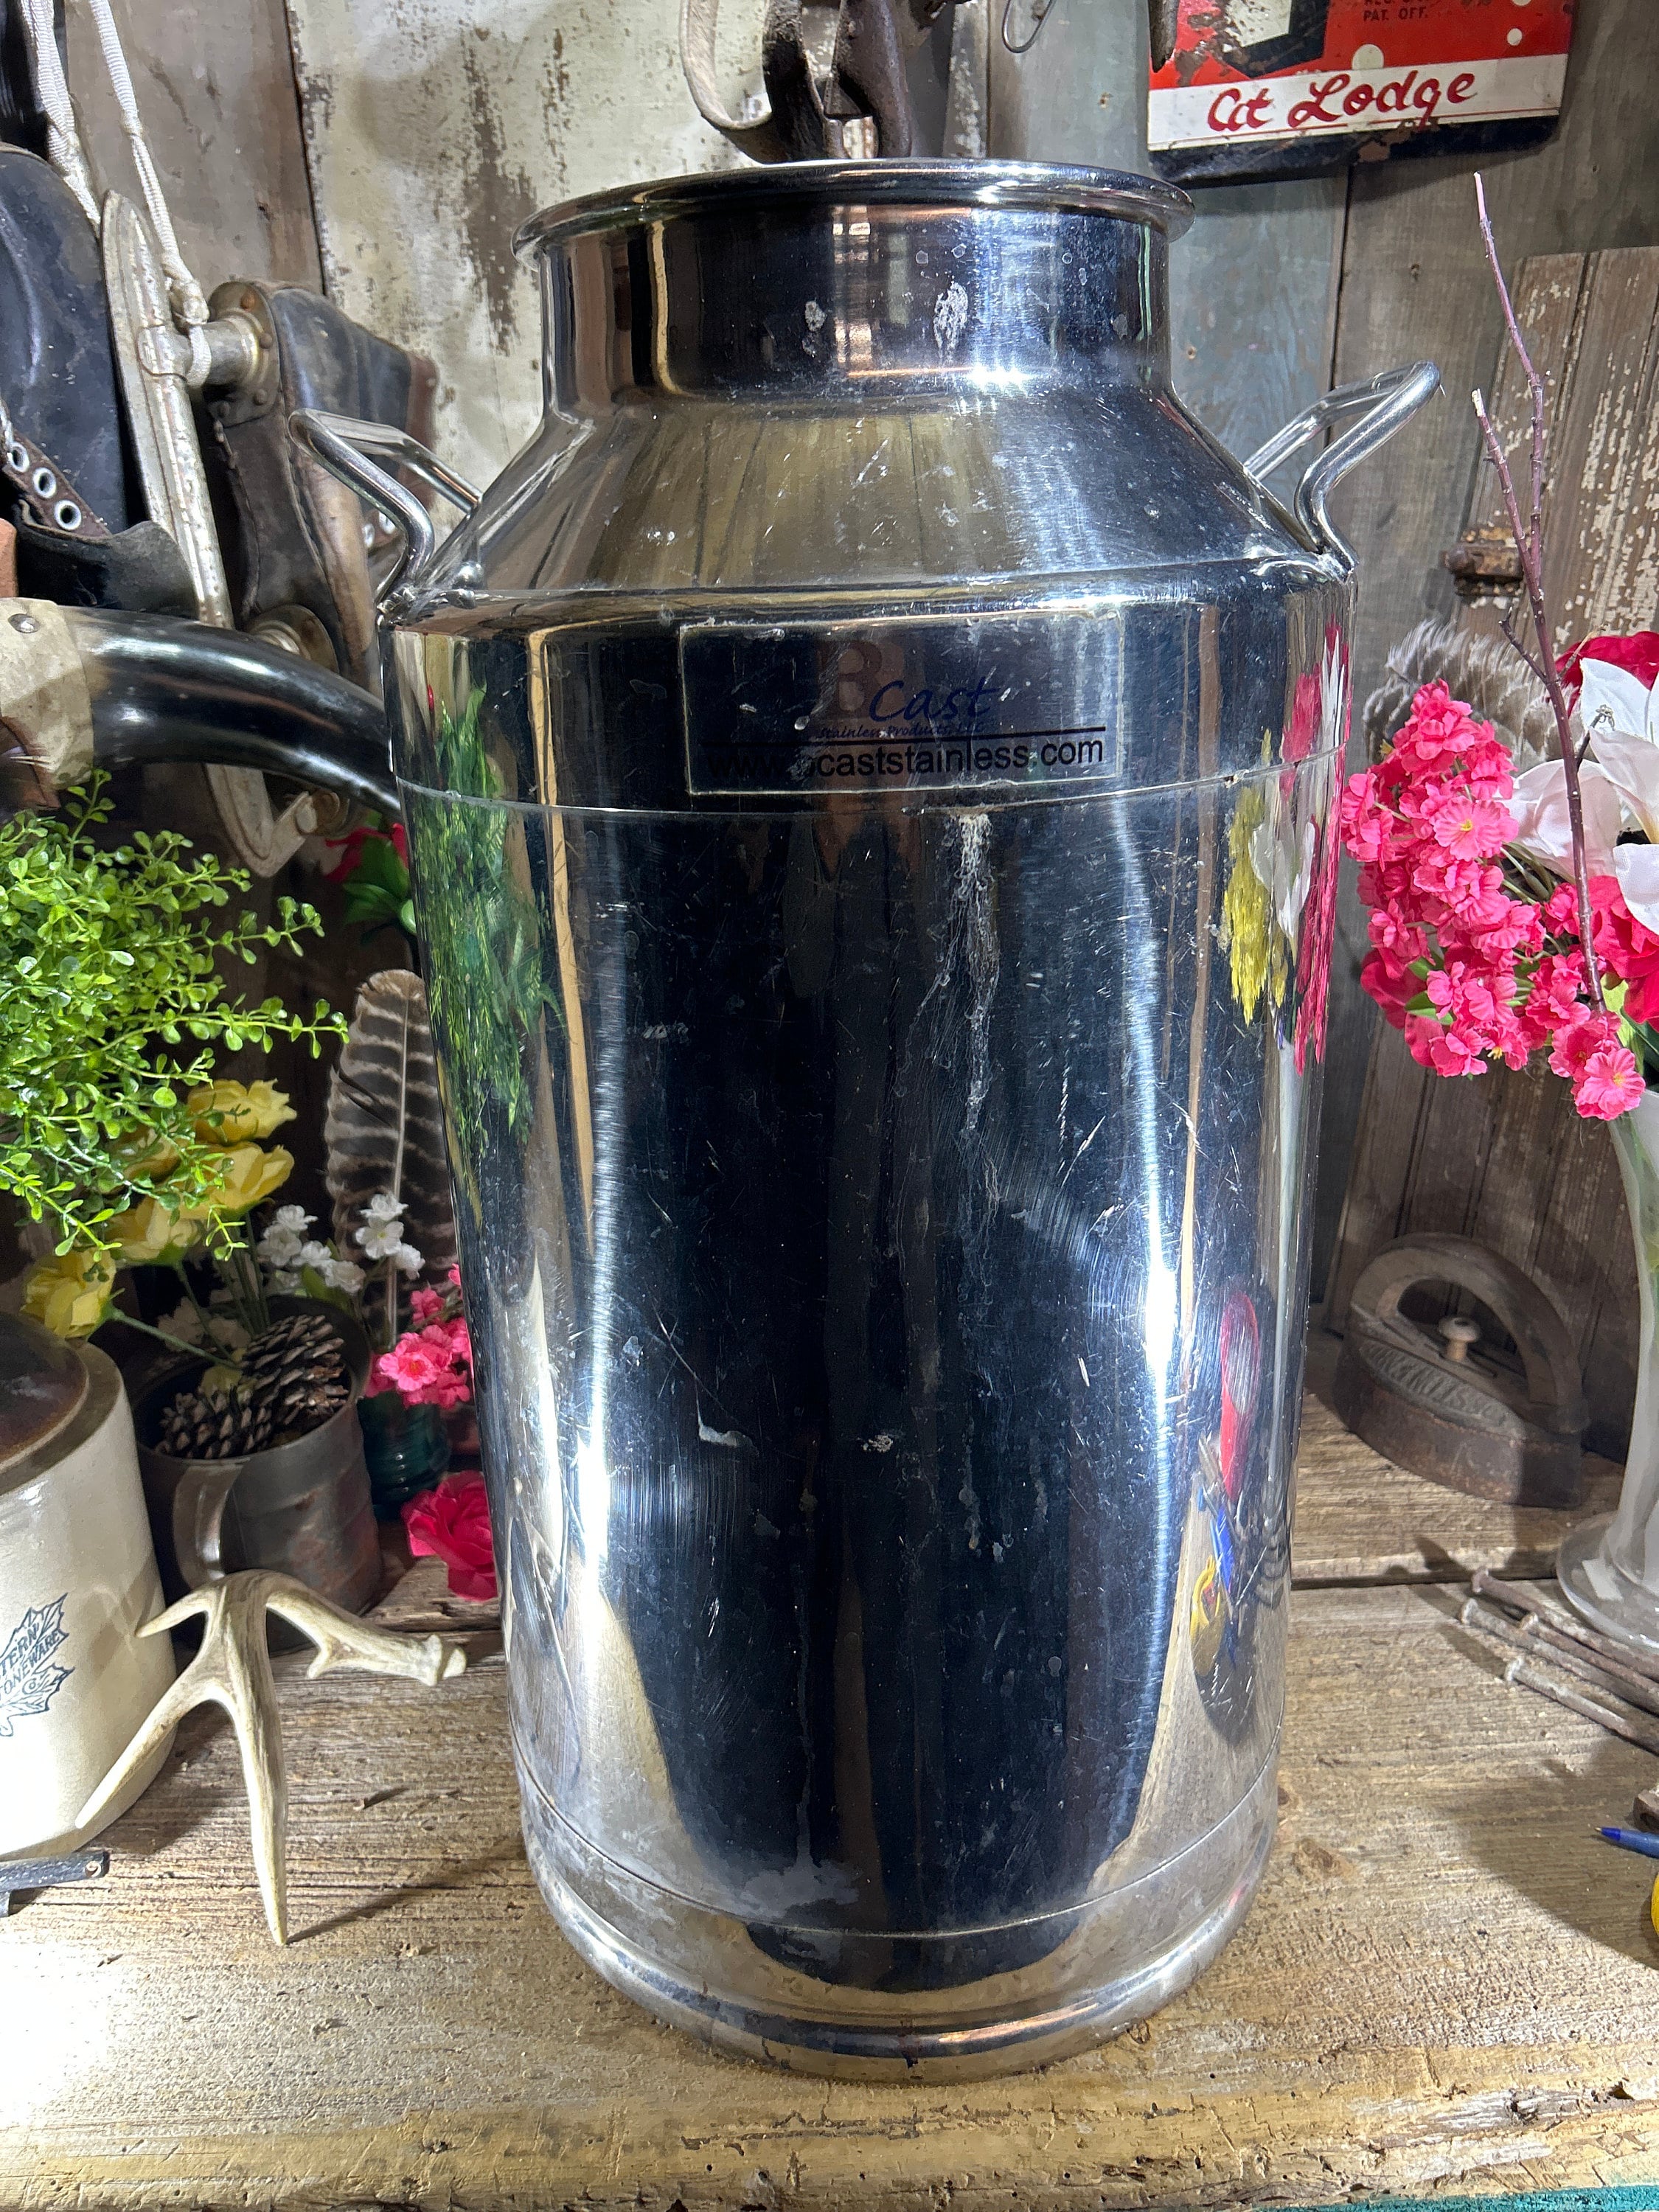 Rural365 Metal Milk Jug, 4 Liter (1 Gal) - Stainless Steel Milk Cans with  Lid